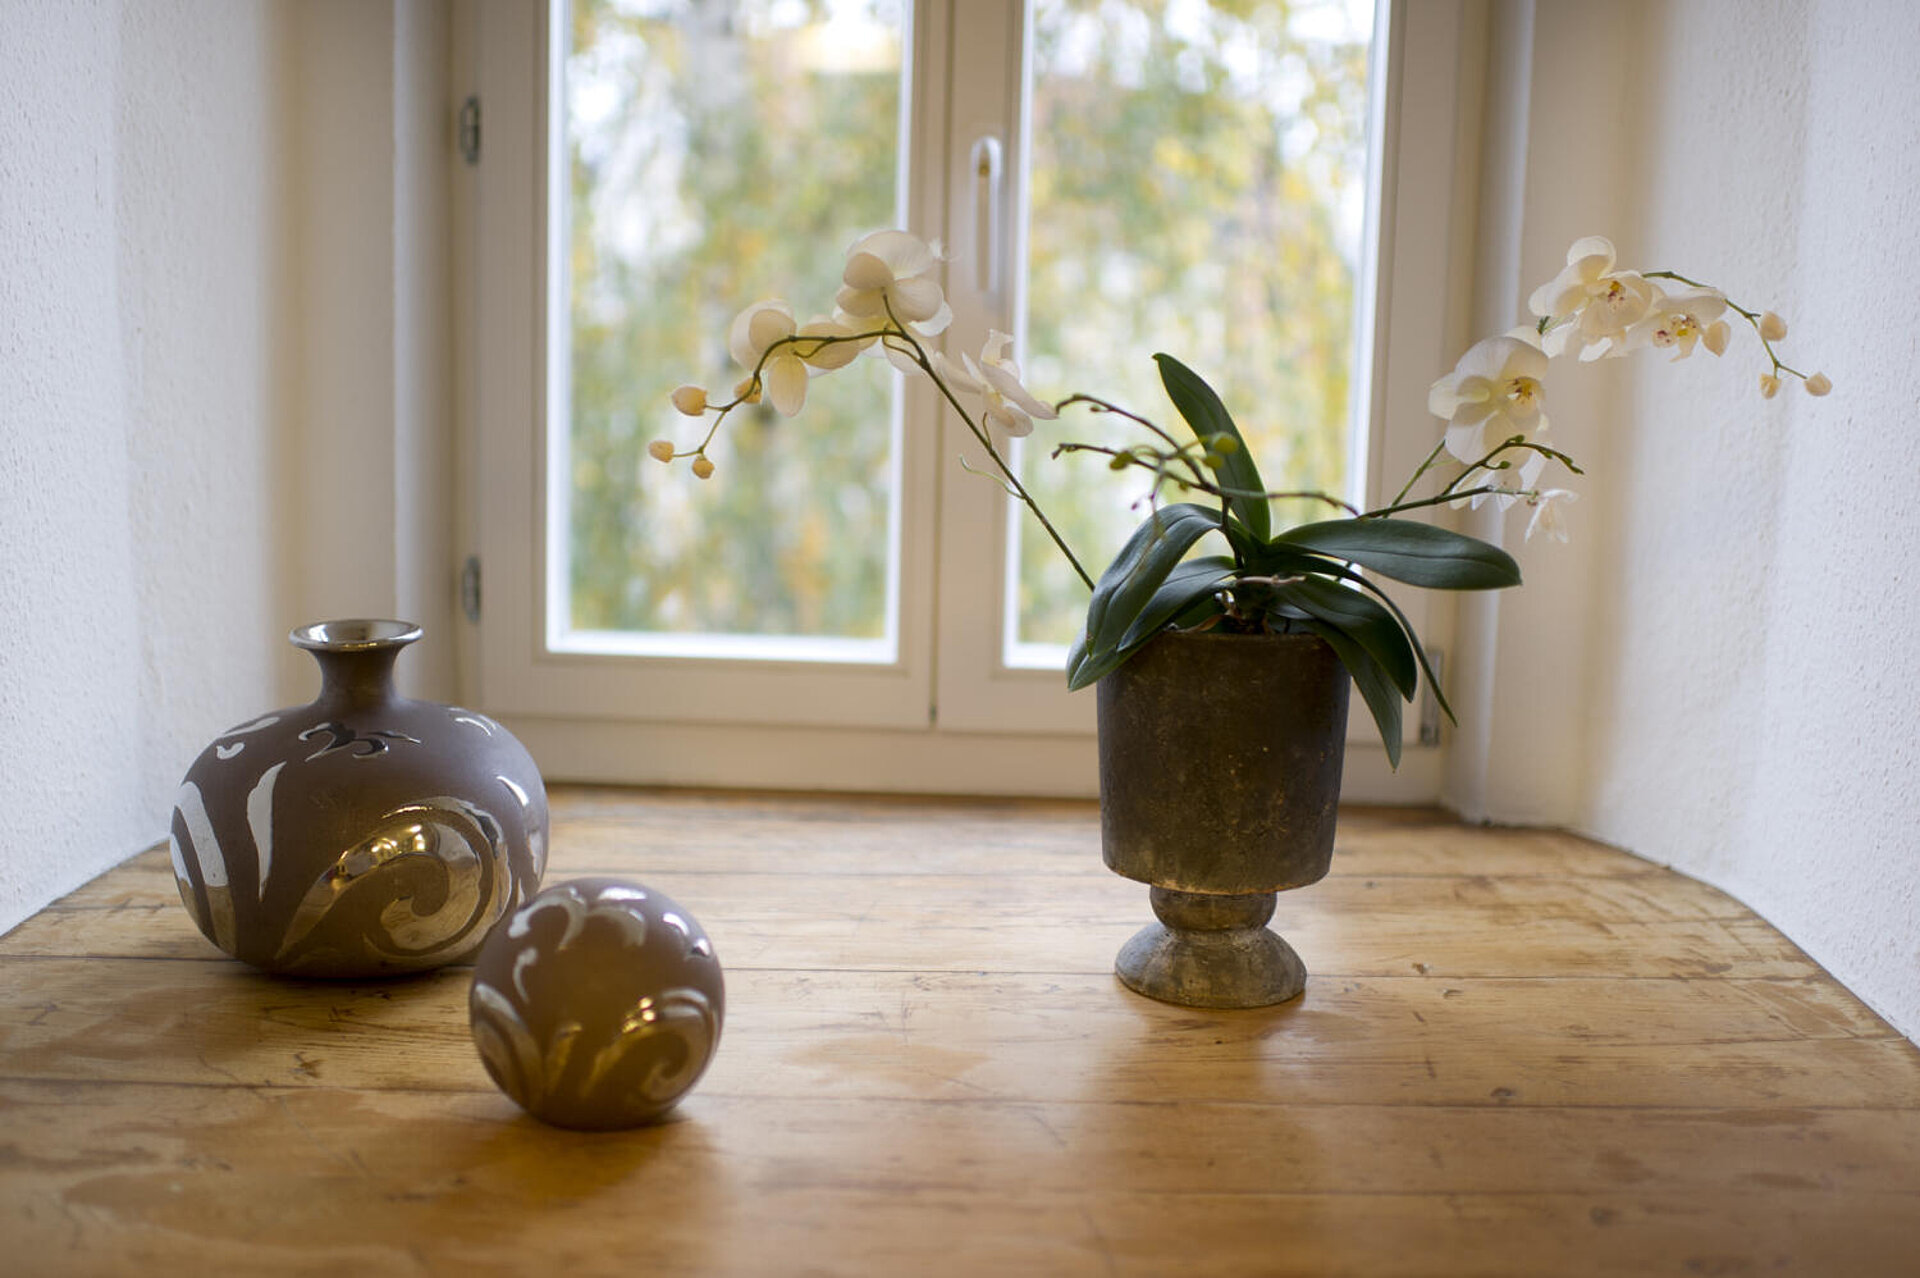 Auf dem hellbraunen Dielen-Fußboden vor einer Glastür stehen drei Keramikvasen:  Eine zylinderförmige mit Blumen, eine leere Bauchige, die Dritte ist ein Kugel.